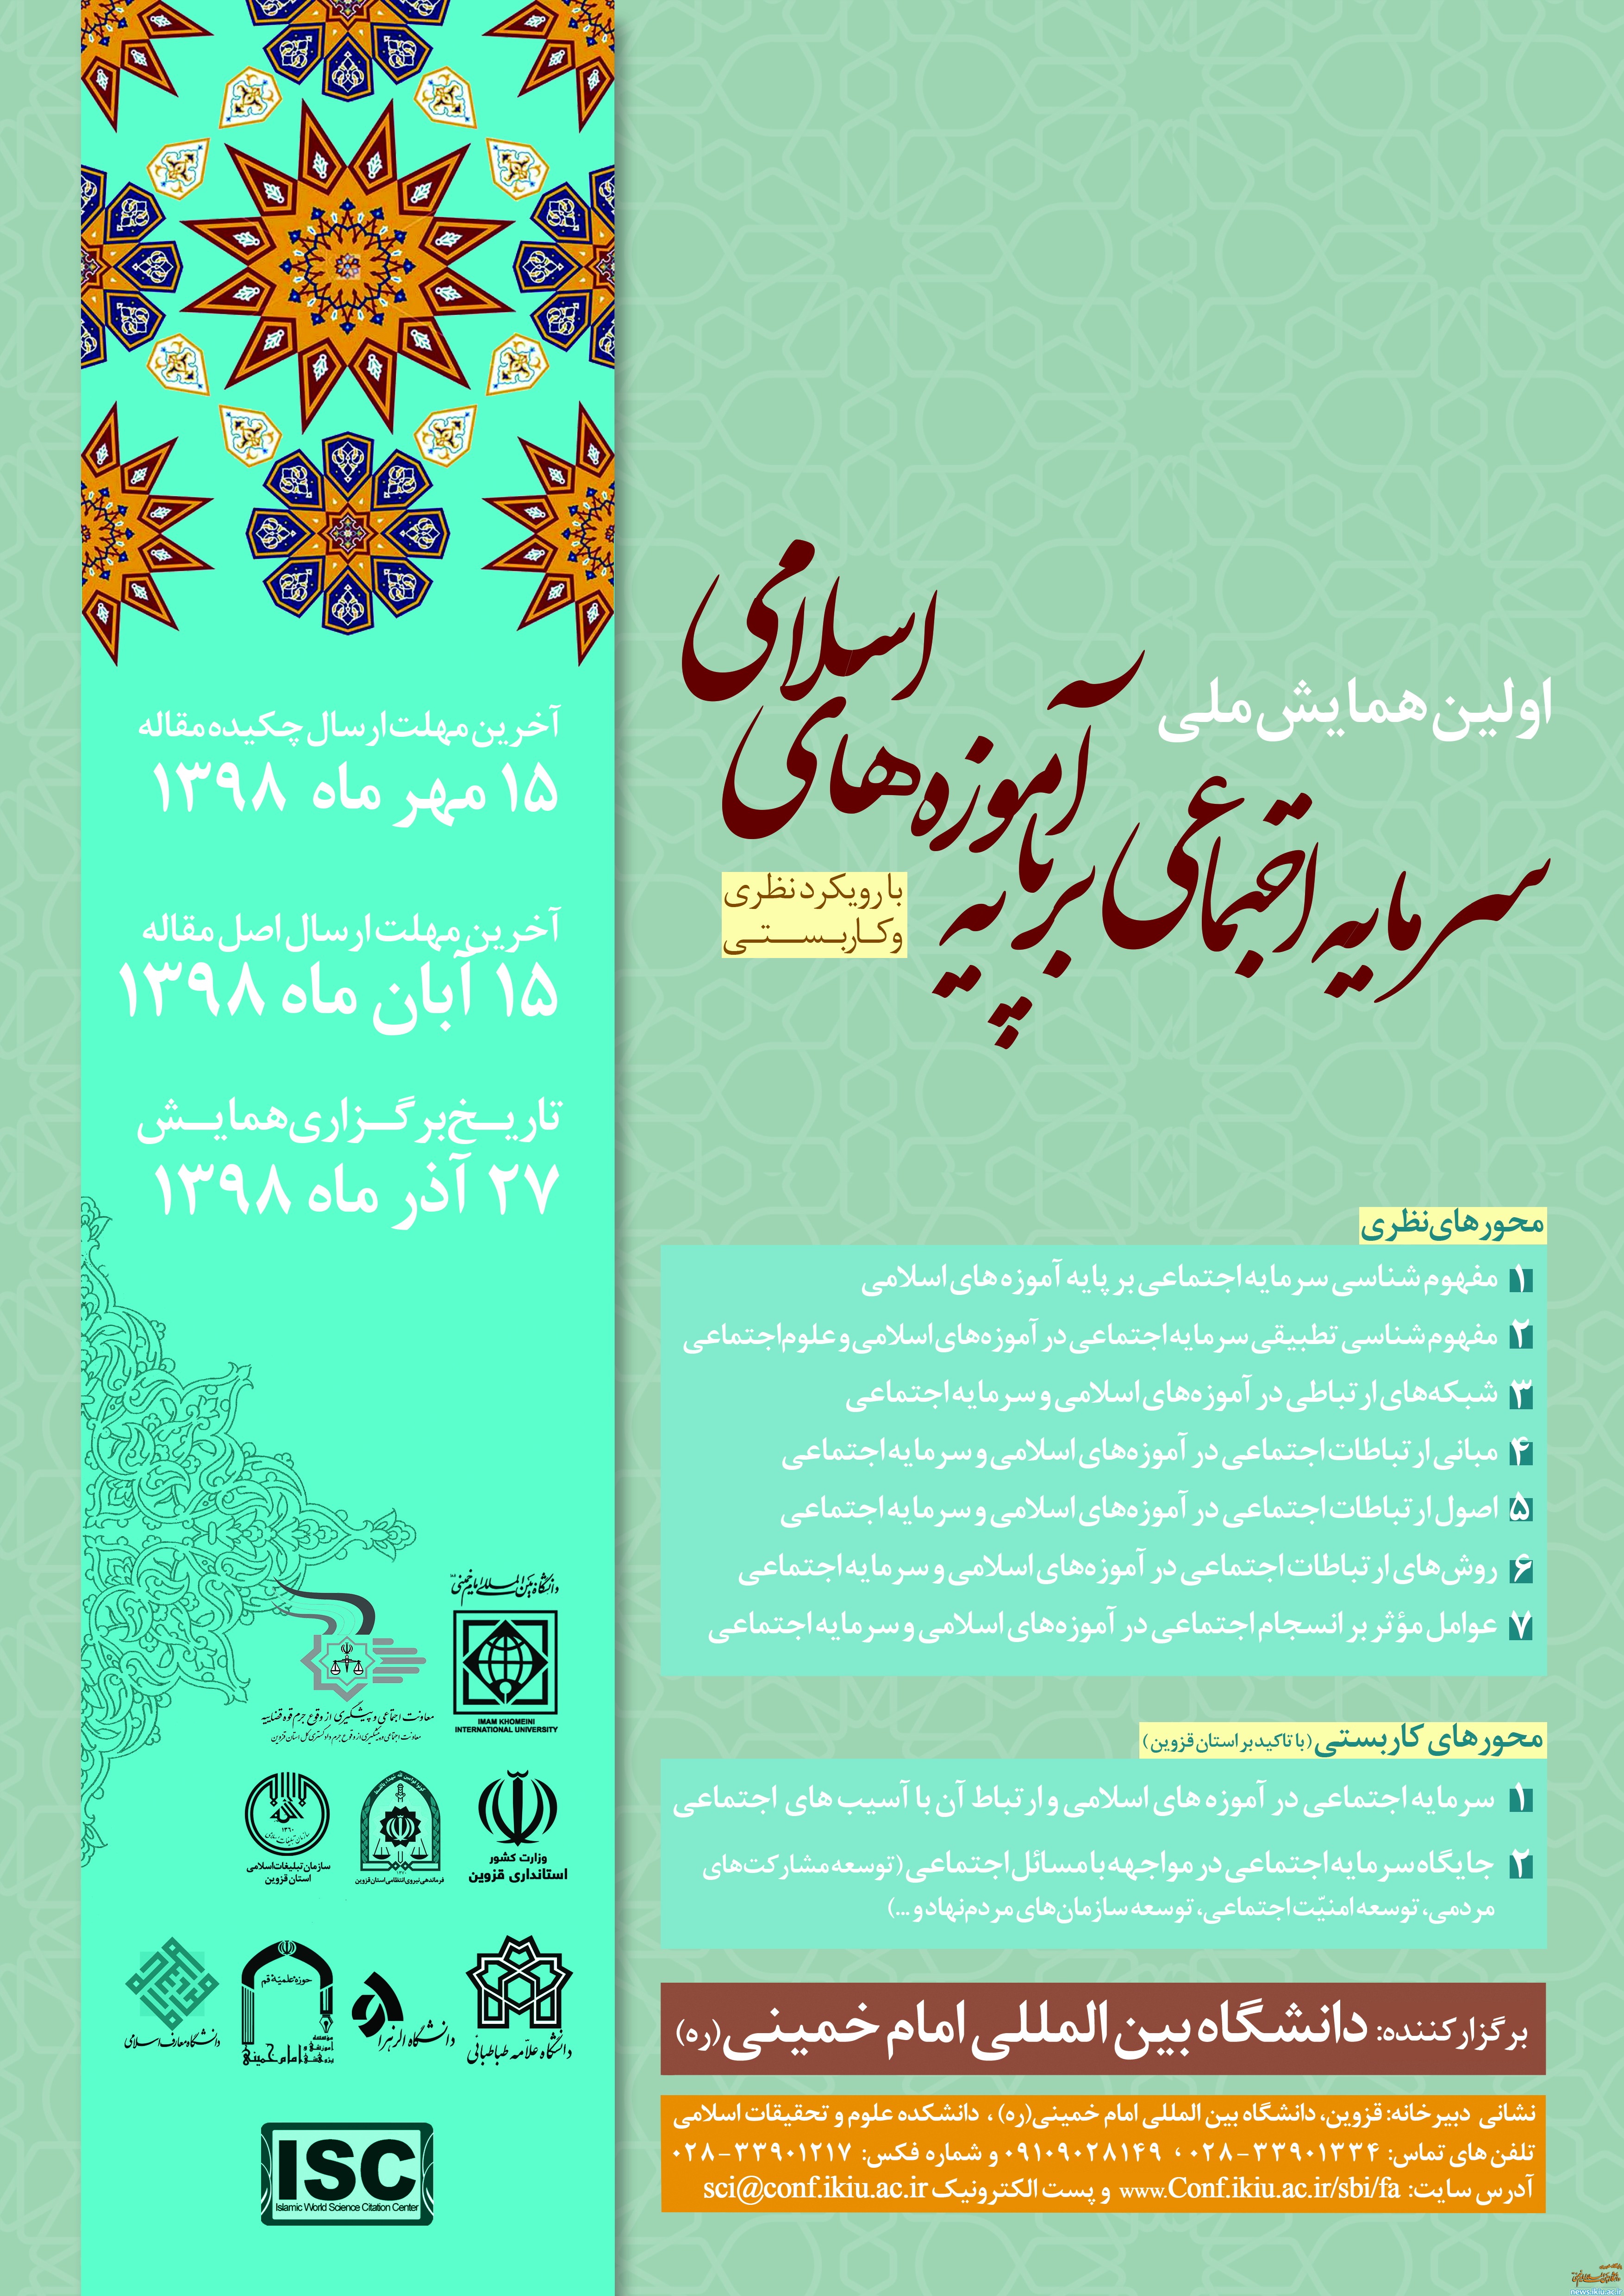 تغییر زمان برگزاری اولین همایش"سرمایه اجتماعی بر پایه آموزه های اسلامی"